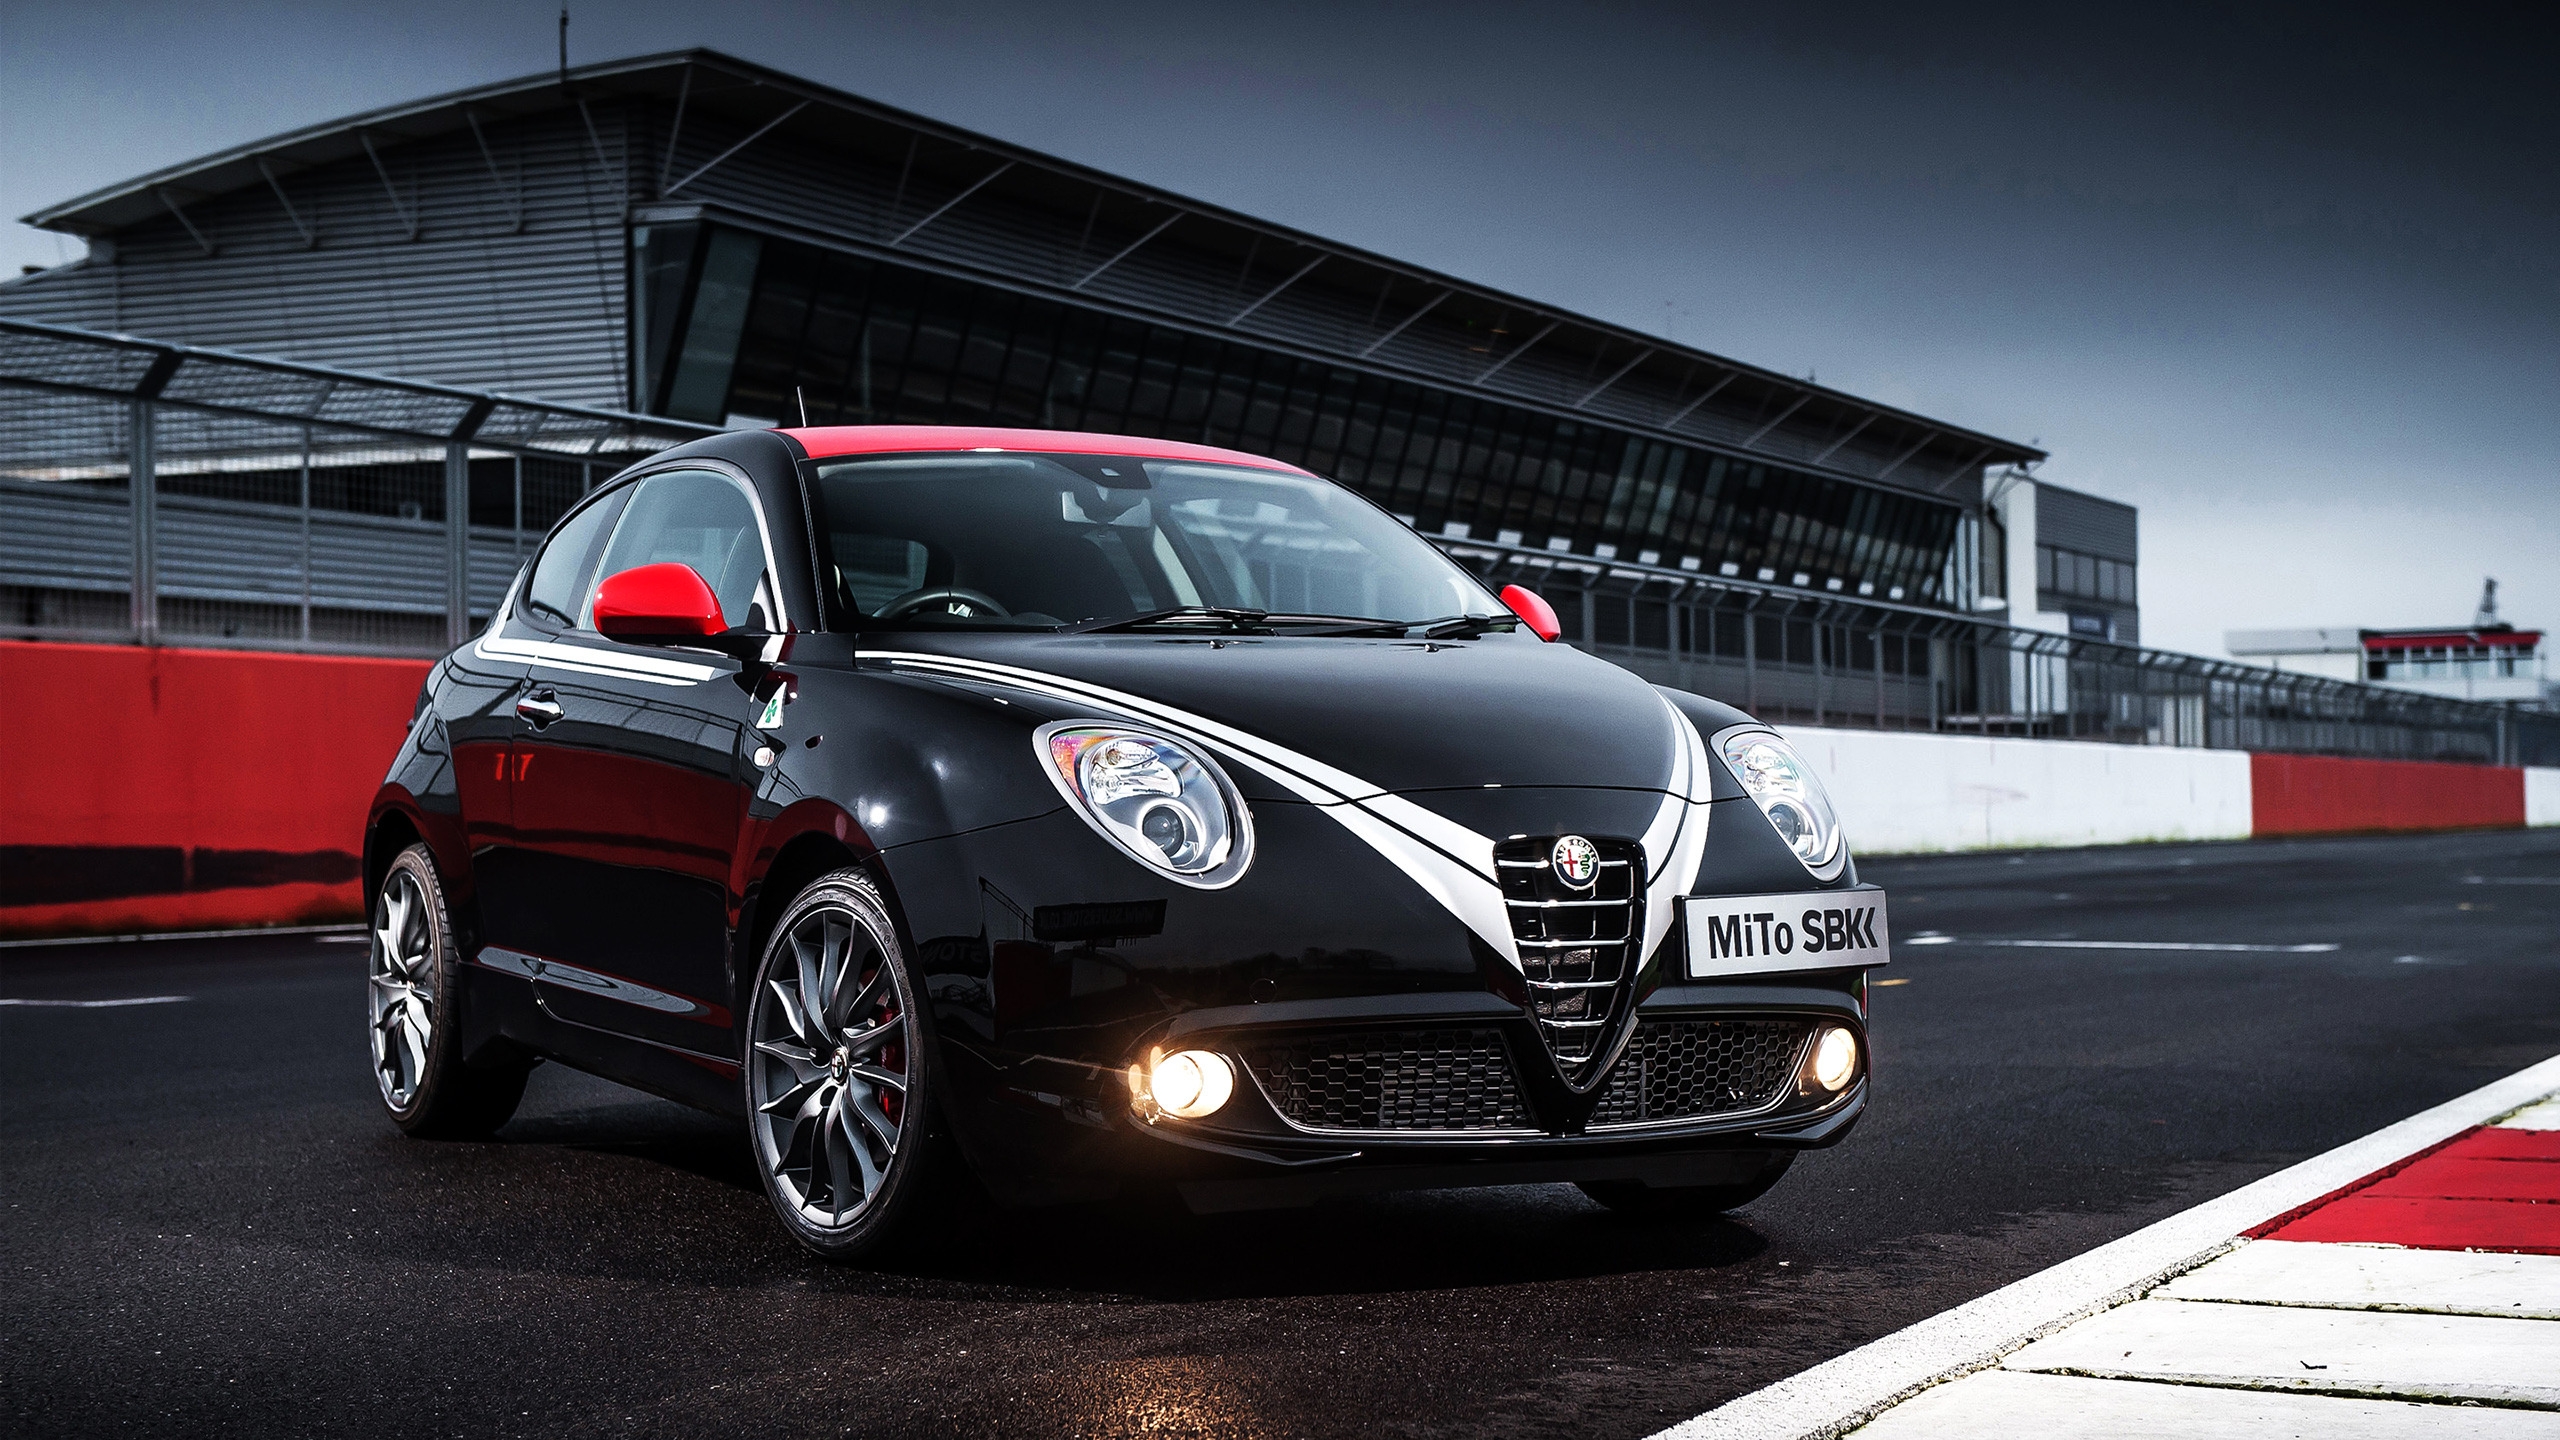 2013 Alfa Romeo Mito for 2560x1440 HDTV resolution